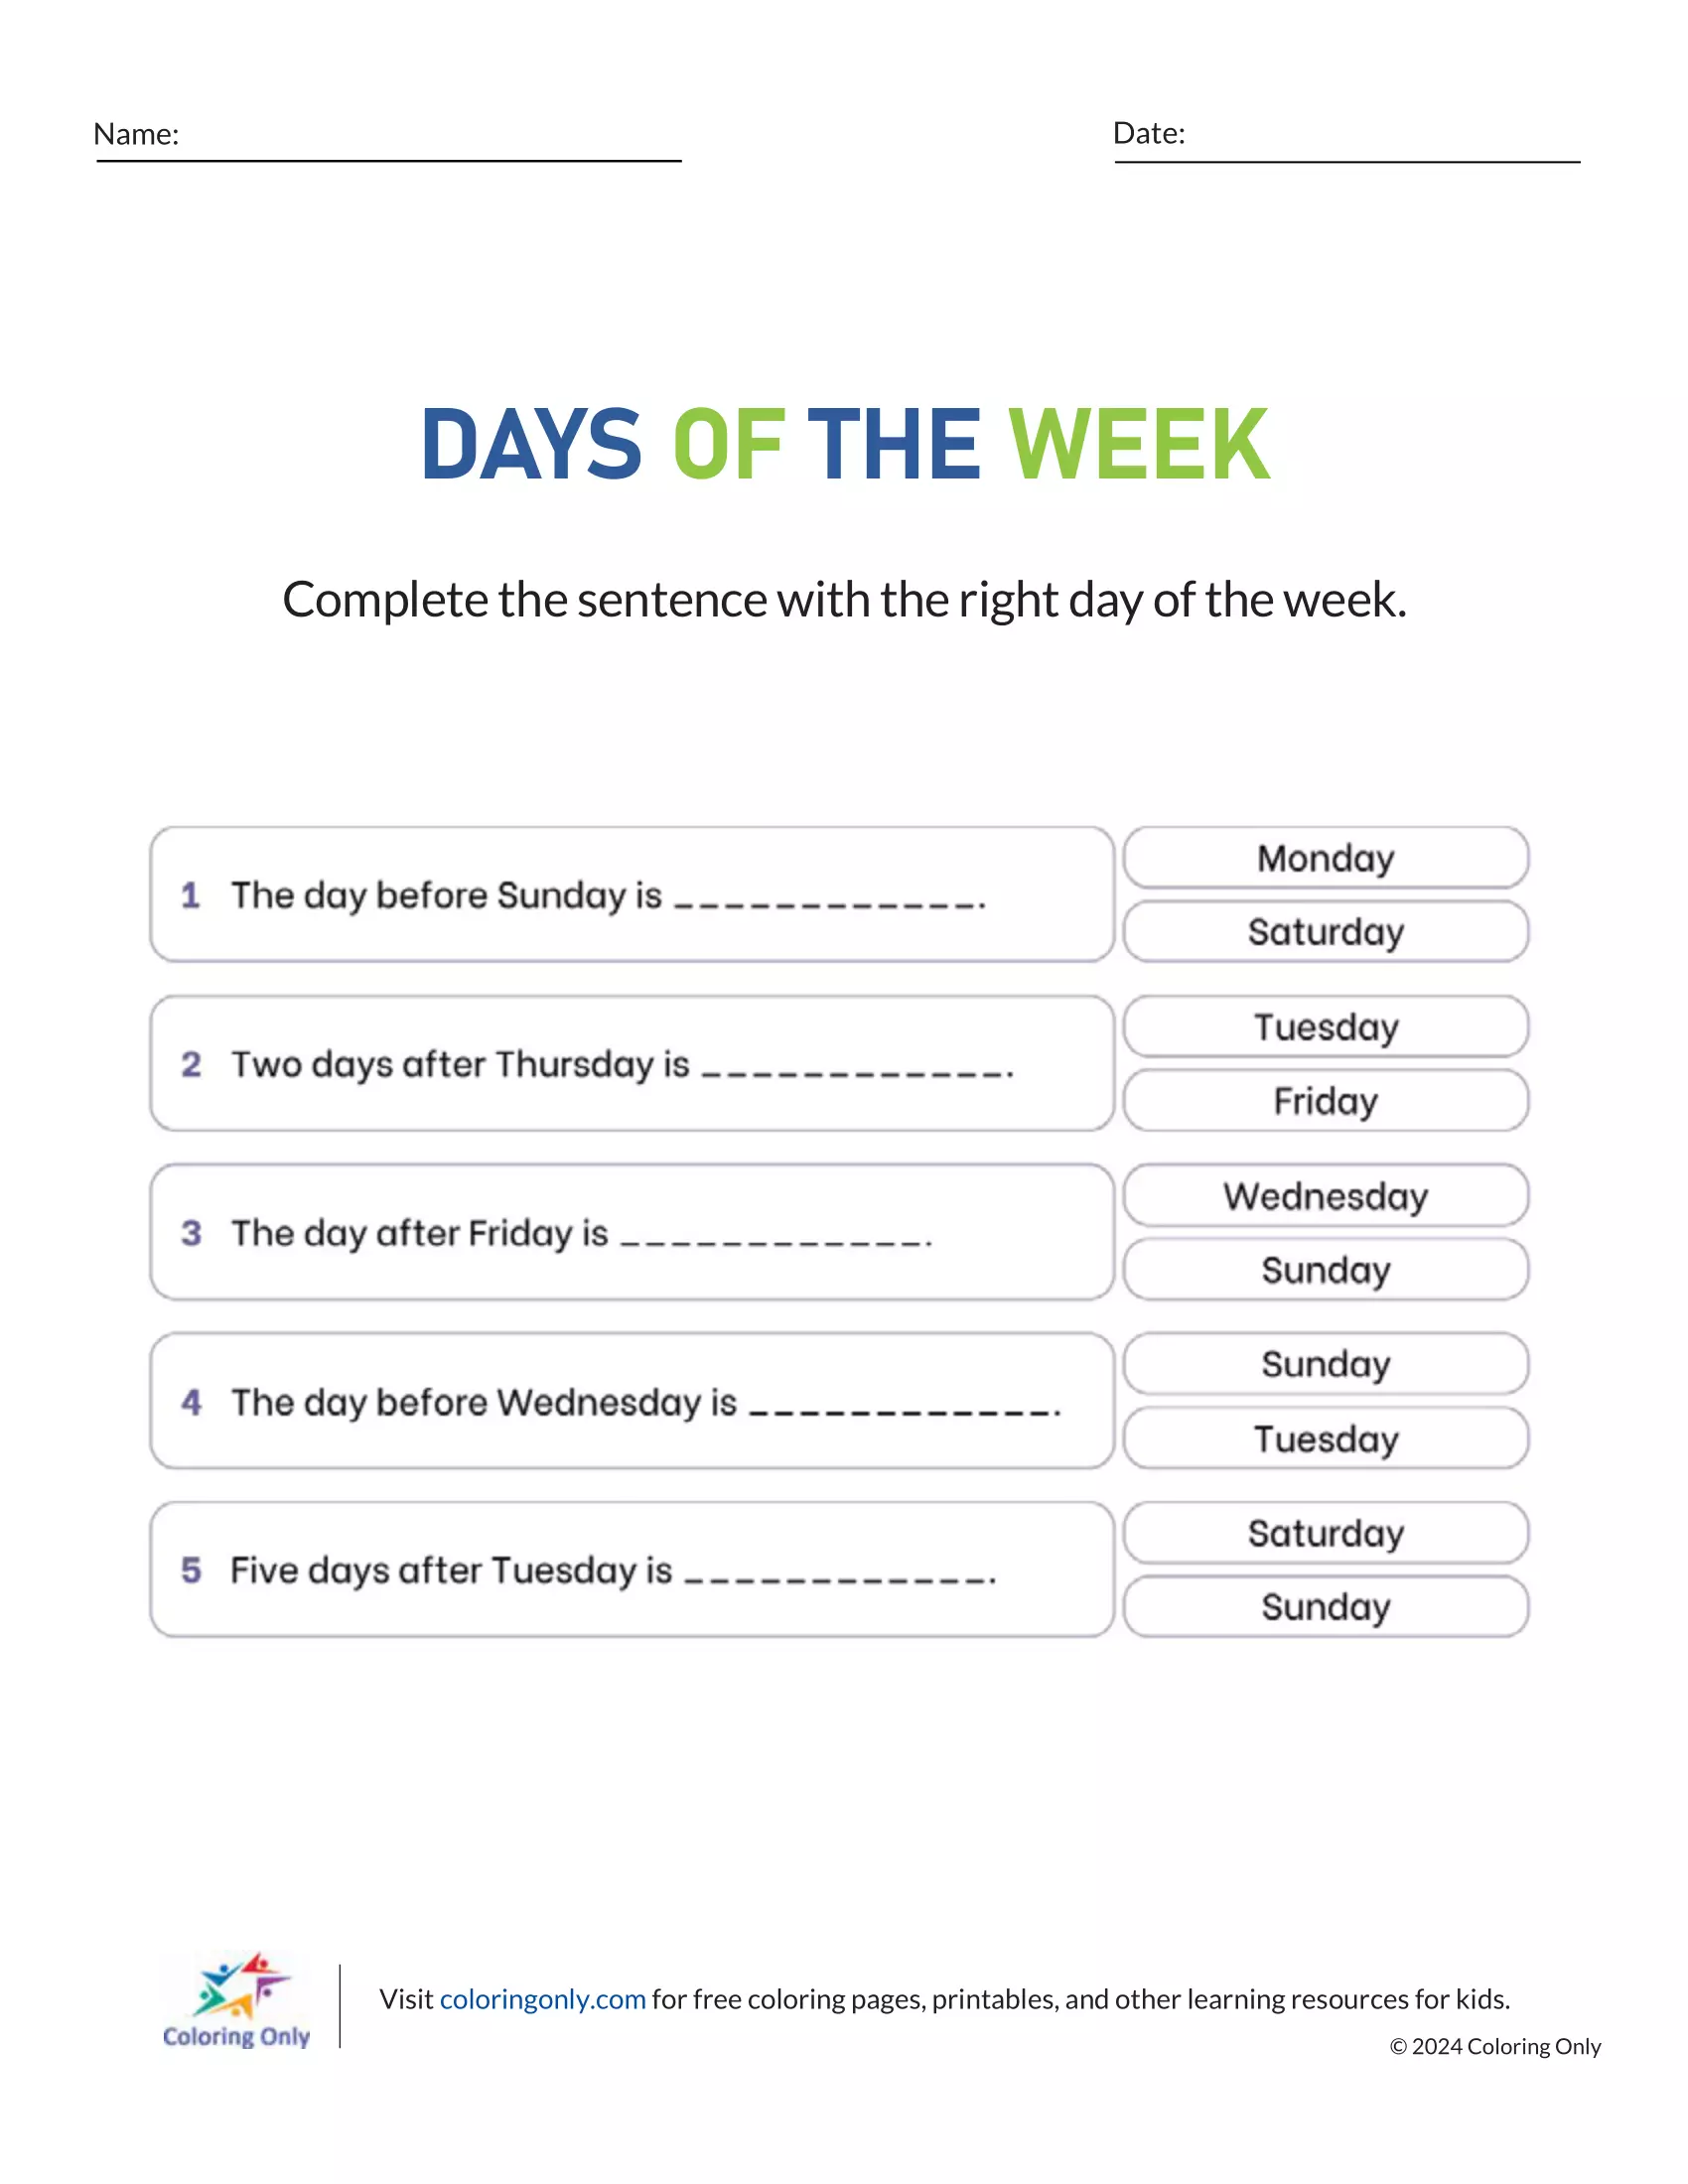 DAYS OF THE WEEK Free Printable Worksheet